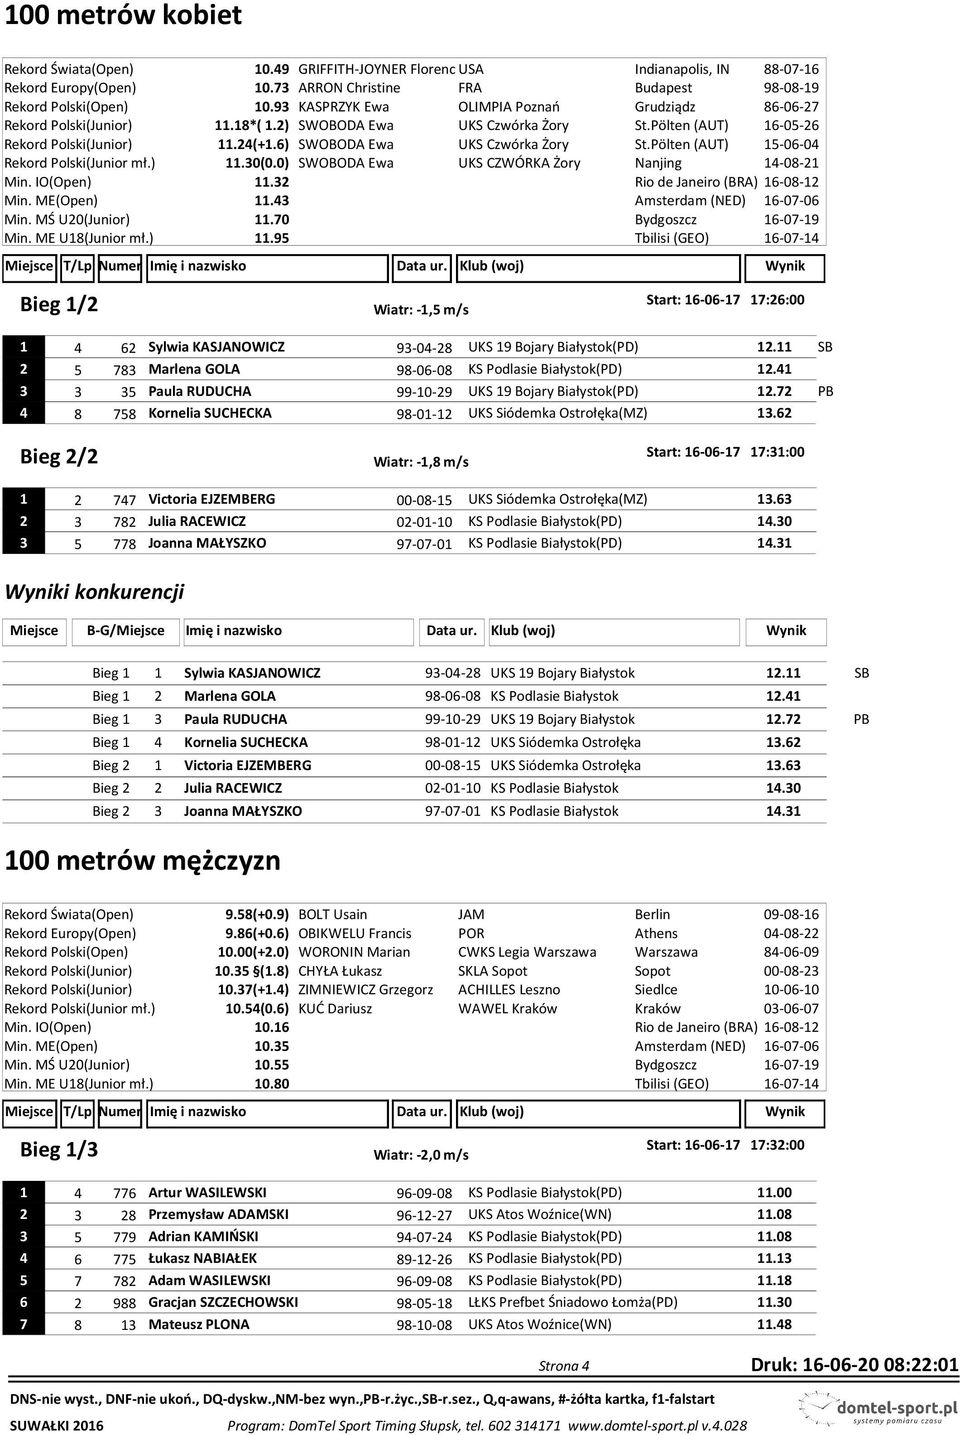 6) SWOBODA Ewa UKS Czwórka Żory St.Pölten (AUT) 15-06-04 Rekord Polski(Junior mł.) 11.30(0.0) SWOBODA Ewa UKS CZWÓRKA Żory Nanjing 14-08-21 Min. IO(Open) 11.32 Min. ME(Open) 11.43 Min.